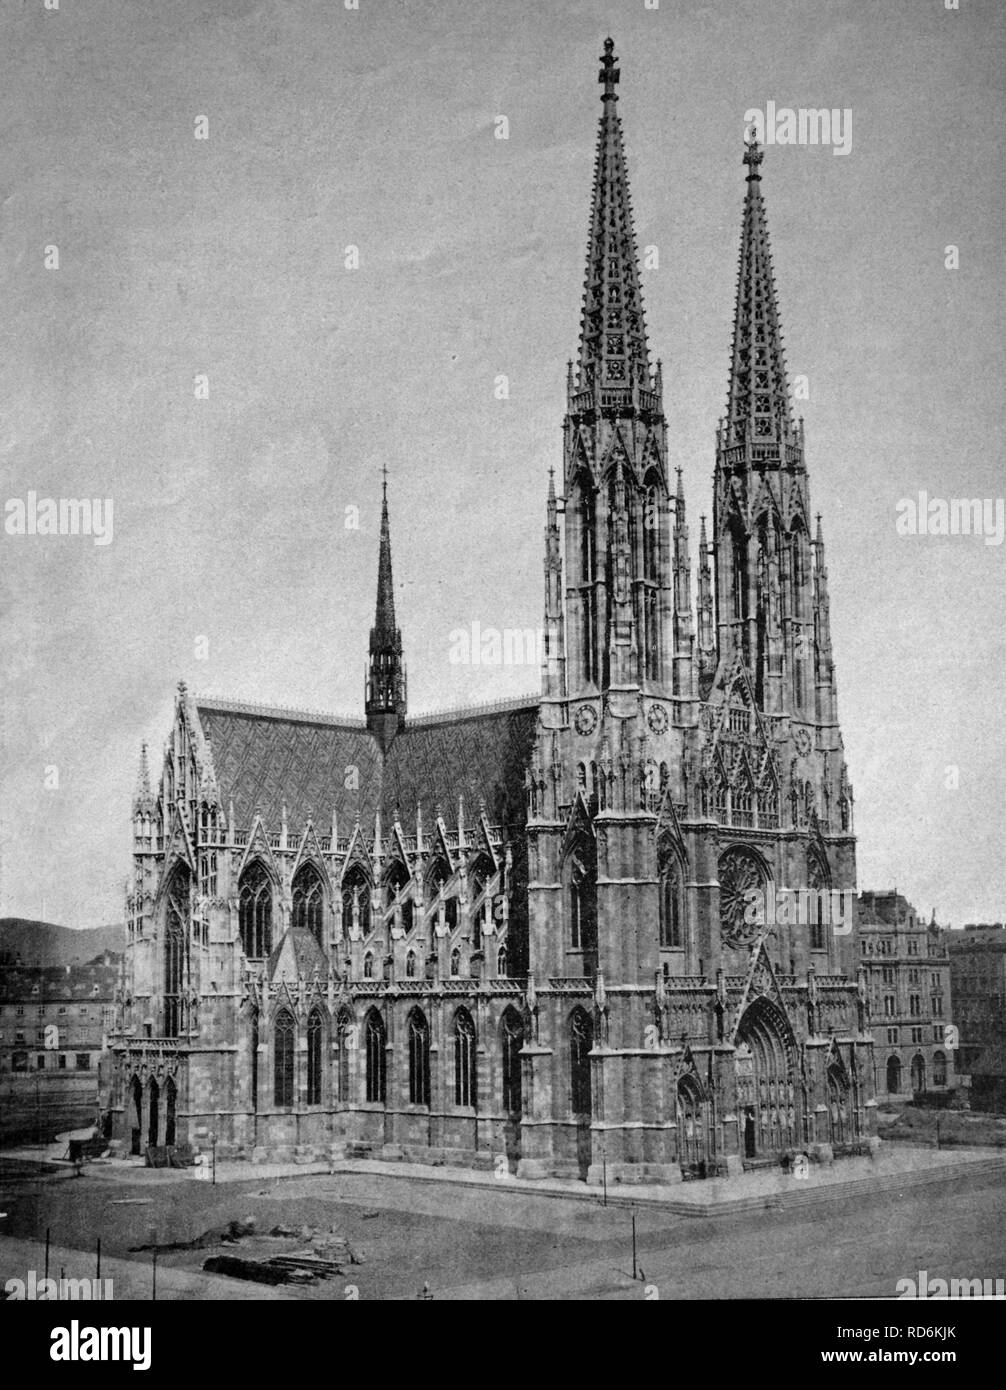 Inizio autotype la Chiesa Votiva, Vienna, Austria, fotografie storiche, 1884 Foto Stock